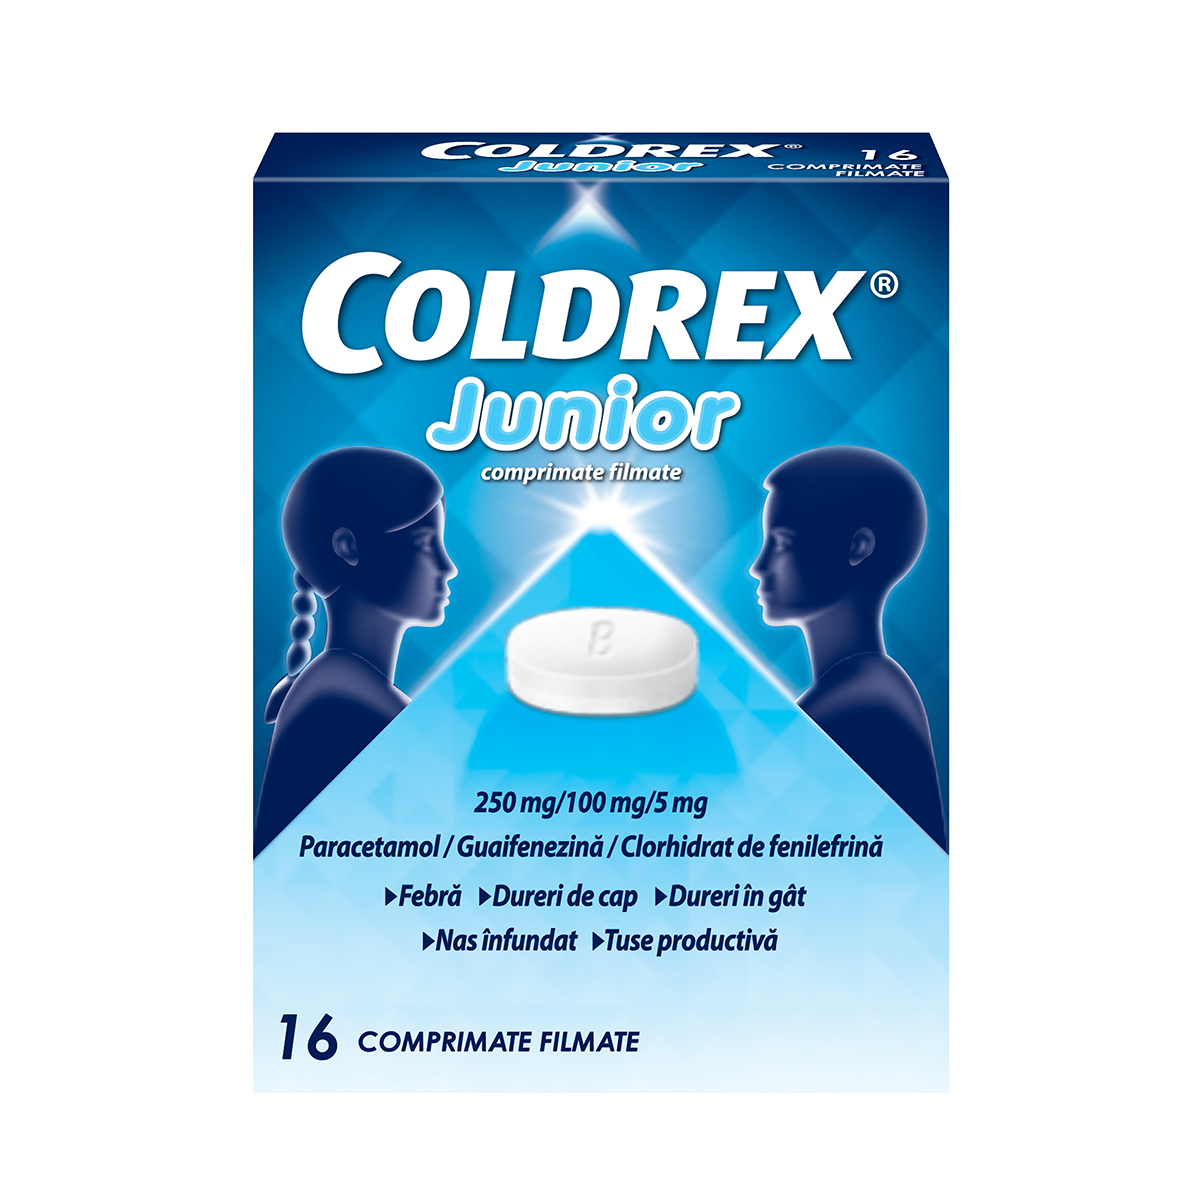 OTC (medicamente care se eliberează fără prescripție medicală) - Coldrex Junior x 16cp.film, epastila.ro